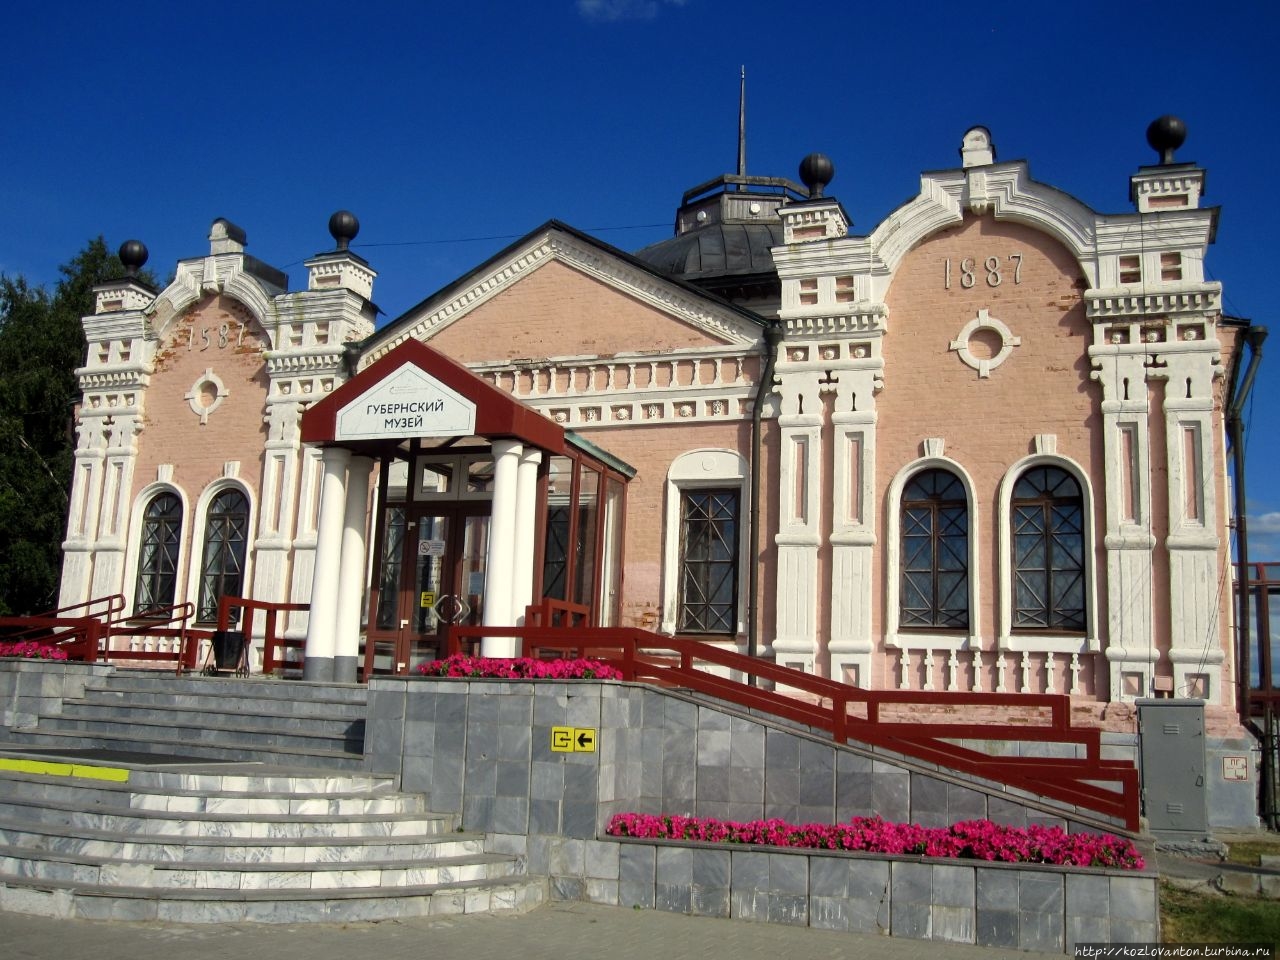 Рядом с садом — Губернский музей. Это первый музей Сибири, открывшийся 10 апреля 1889 г.  и находившийся под личным покровительством Николая II. Тобольск, Россия